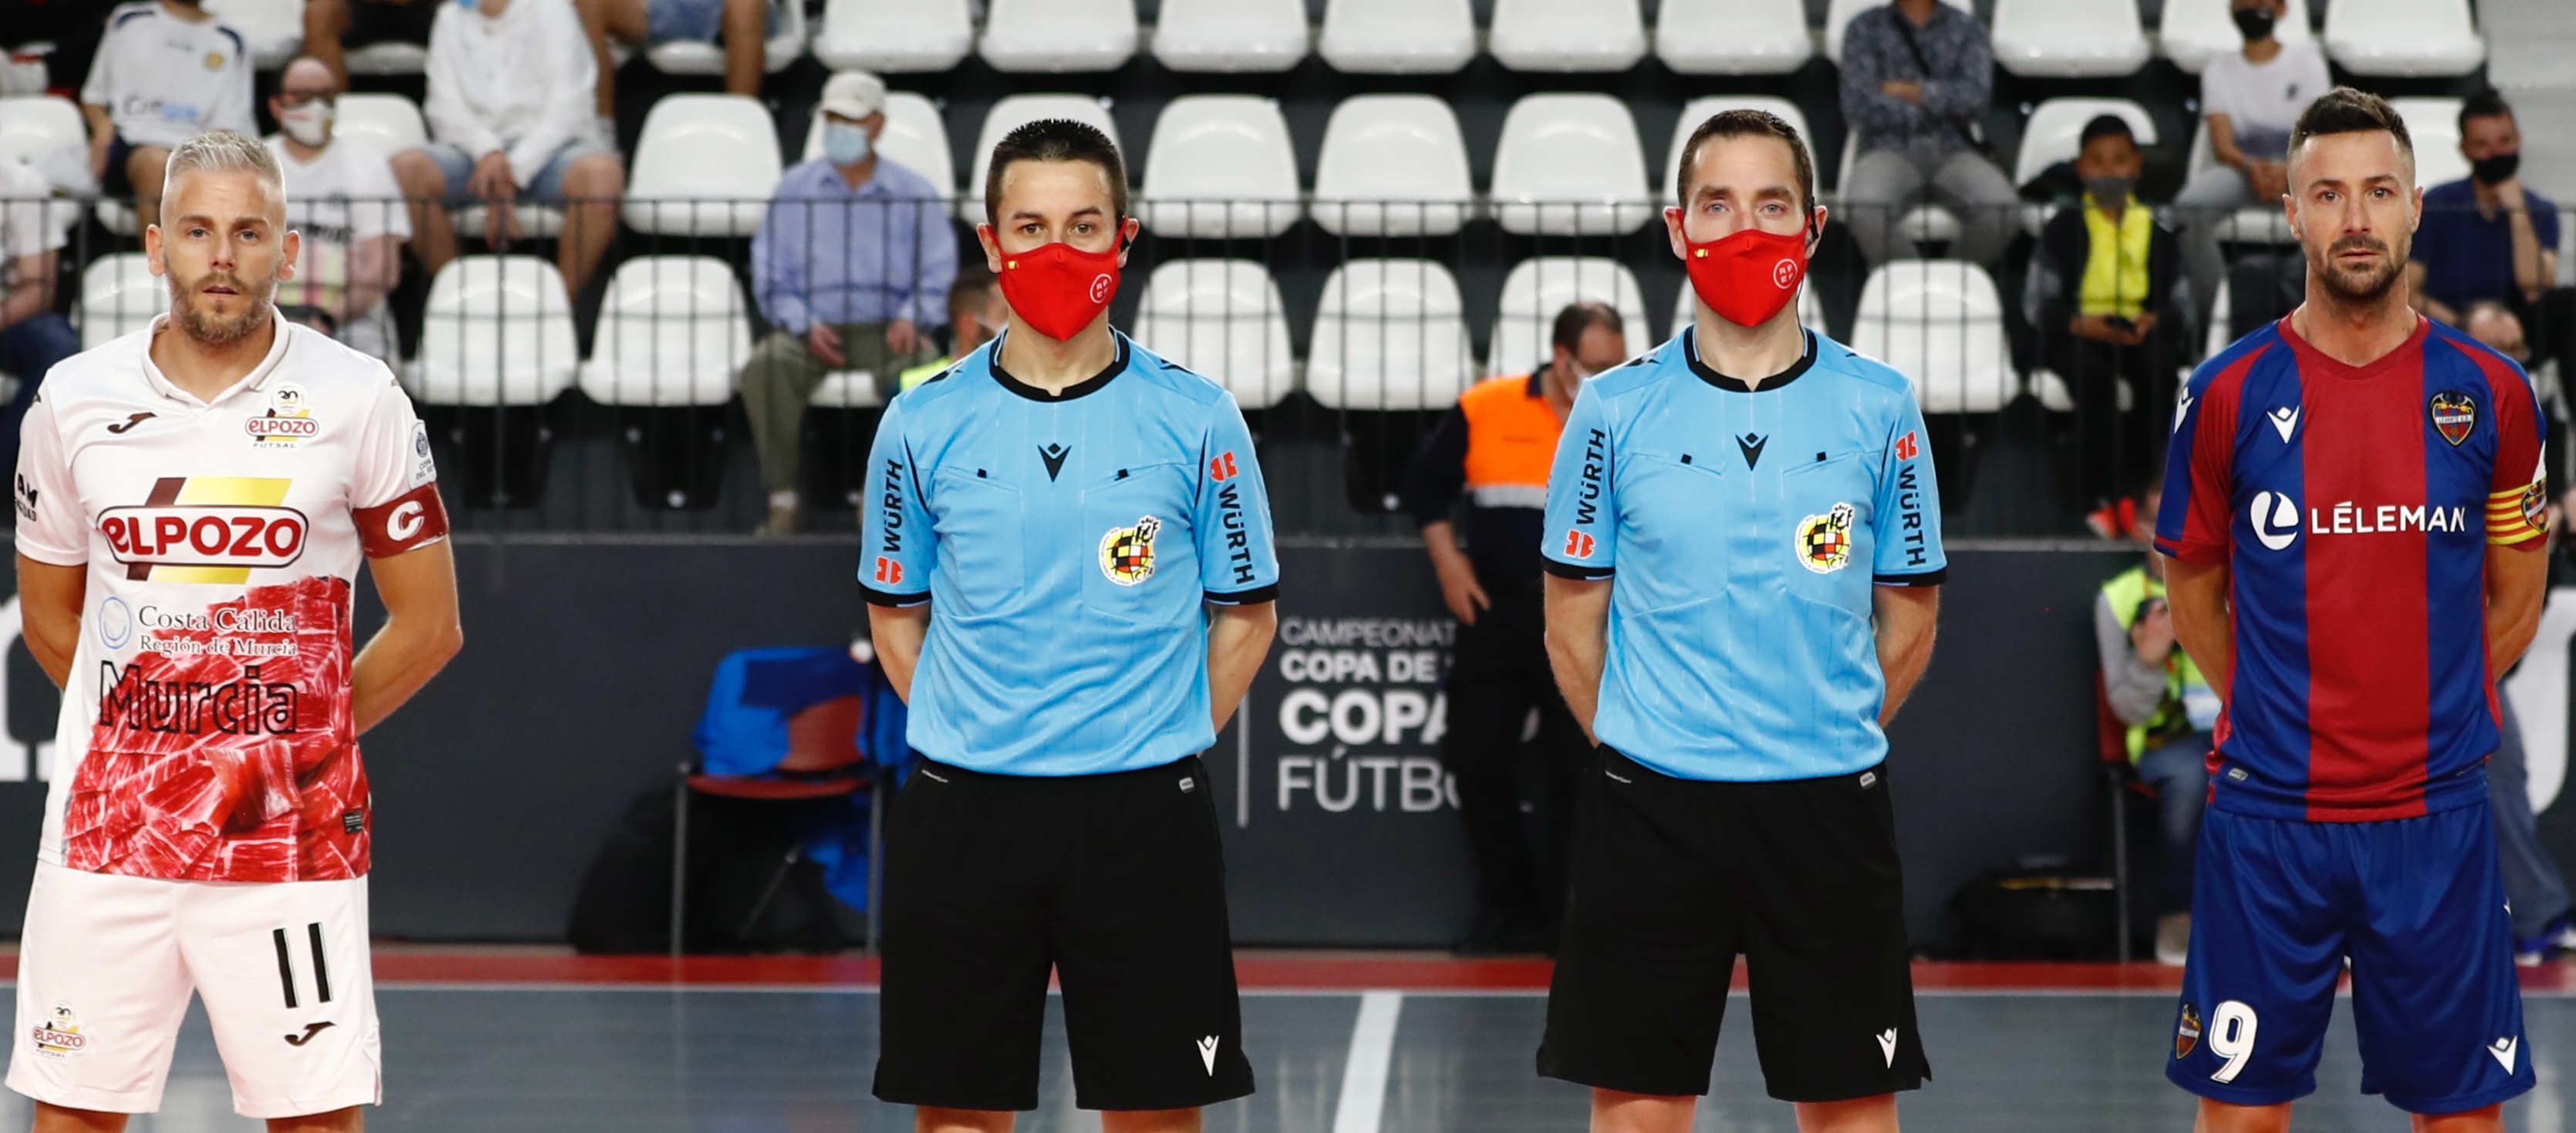 Representació arbitral catalana als play-off nacional de futbol sala